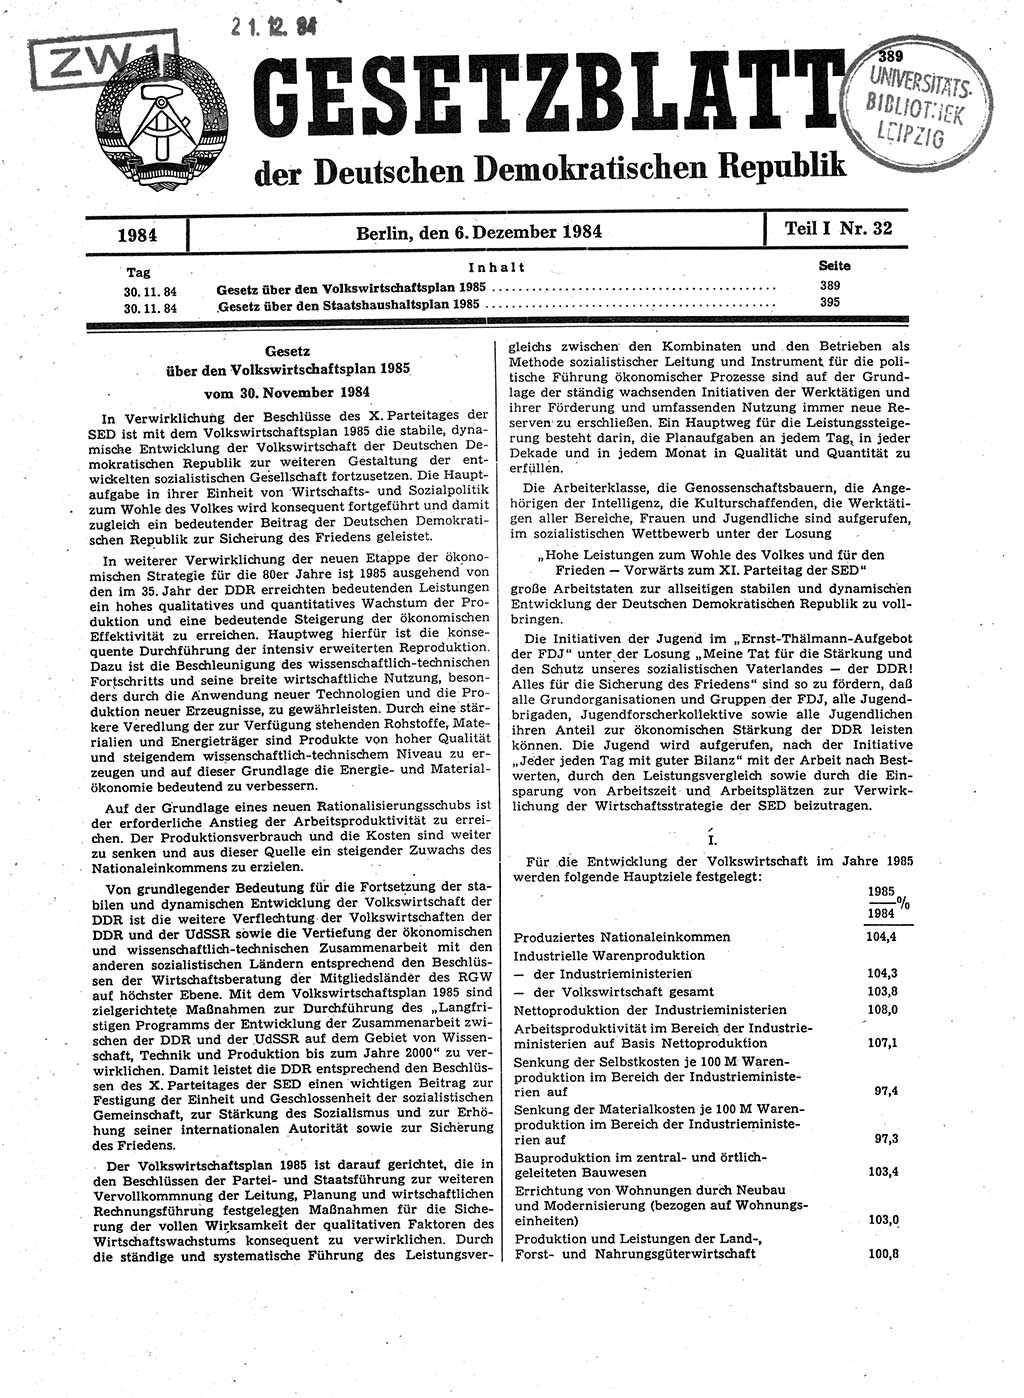 Gesetzblatt (GBl.) der Deutschen Demokratischen Republik (DDR) Teil Ⅰ 1984, Seite 389 (GBl. DDR Ⅰ 1984, S. 389)